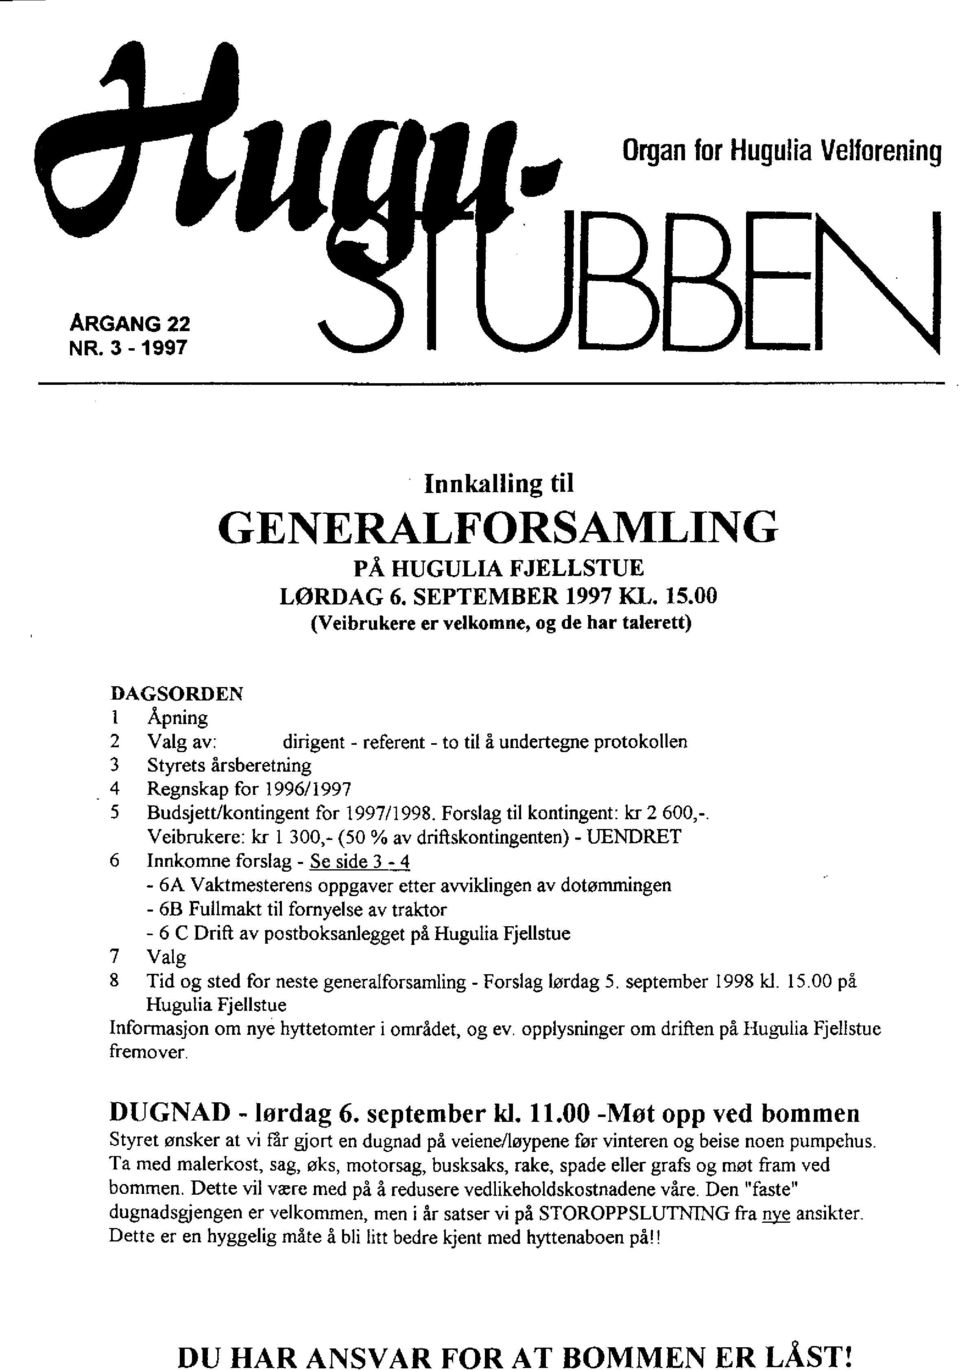 Budsjett/kontingent for 1997/1998. Forslag til kontingent: kr 2 600,-.